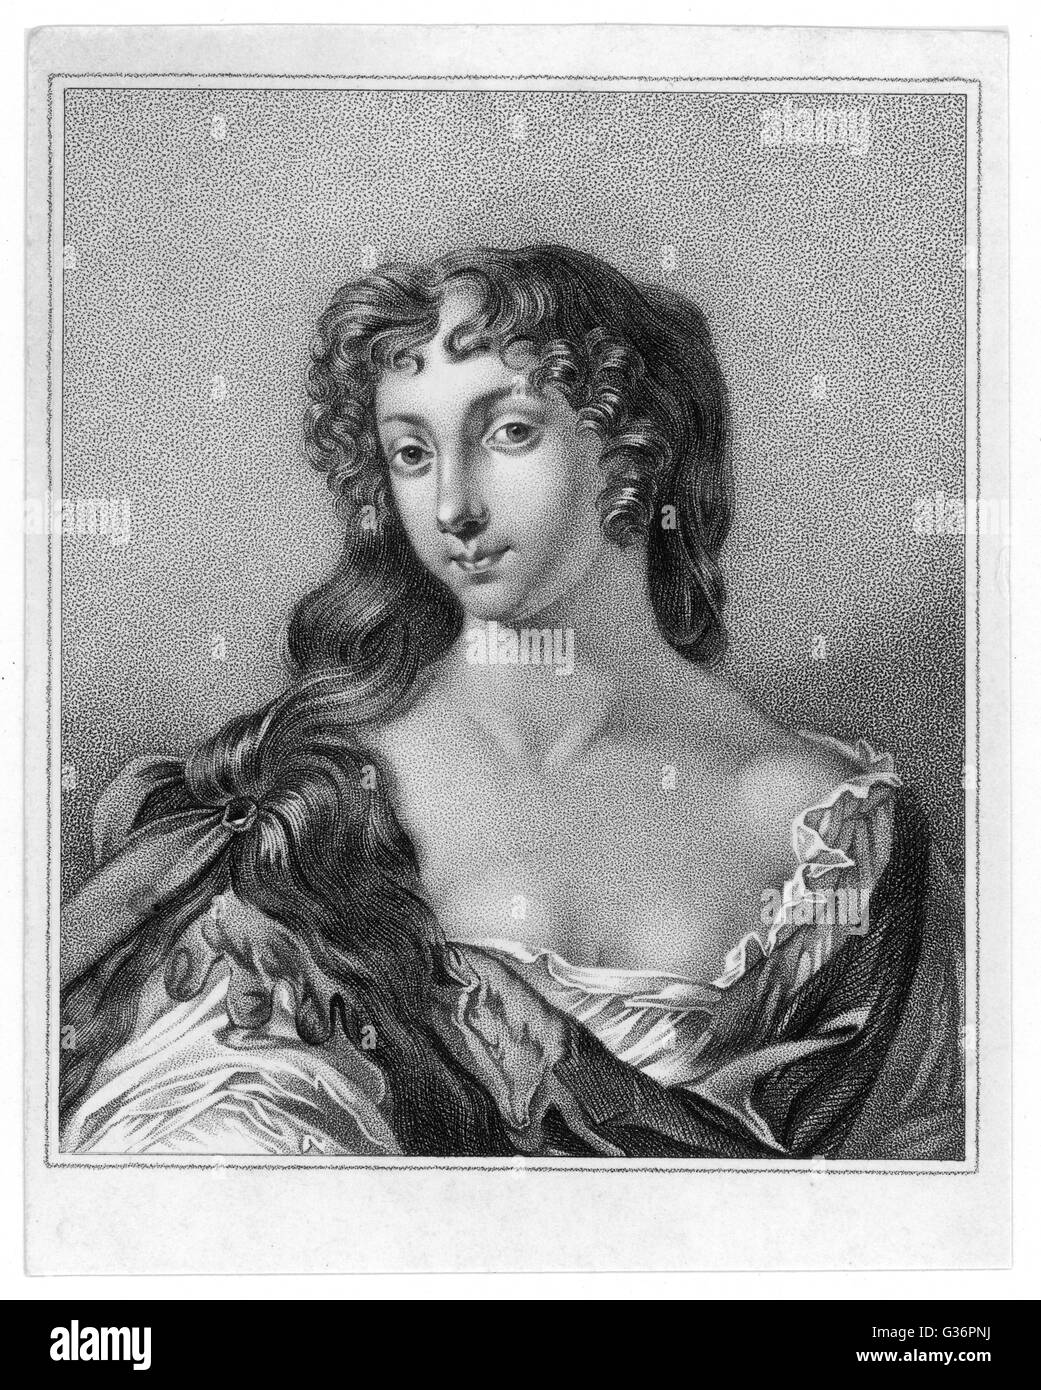 Eleanor "Nell" Gwyn (oder Gwynn oder Gwynne), englische Schauspielerin, Mätresse von König Charles II.        Datum: 1650-1687 Stockfoto